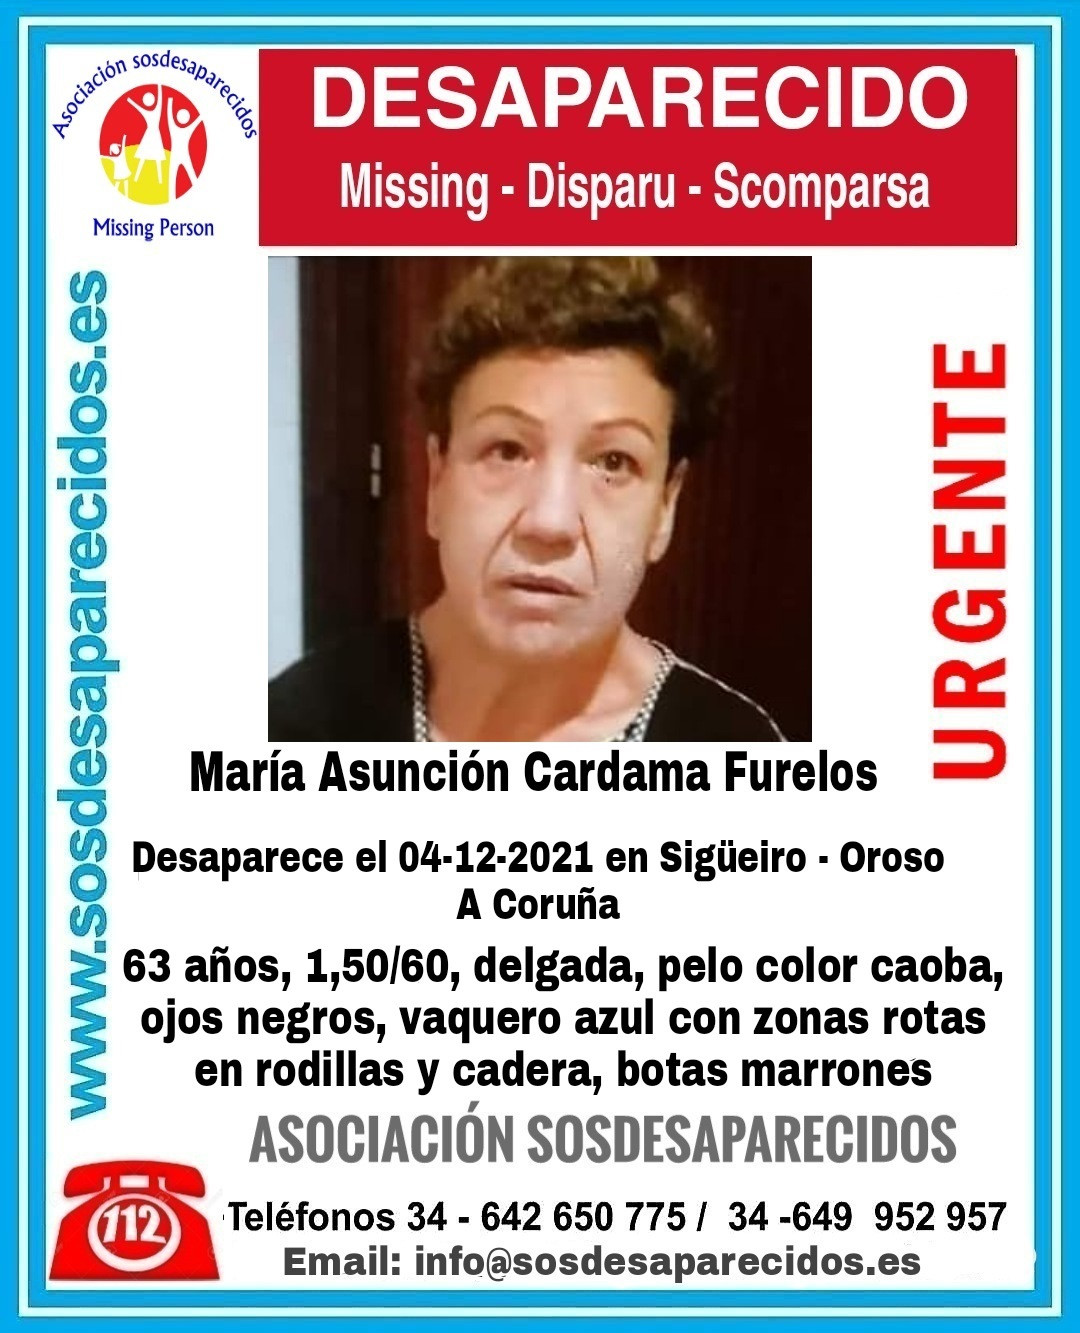 María Asunción Cardama Furelos, muller de 65 anos desaparecida en Sigüeiro, Oroso (A Coruña).